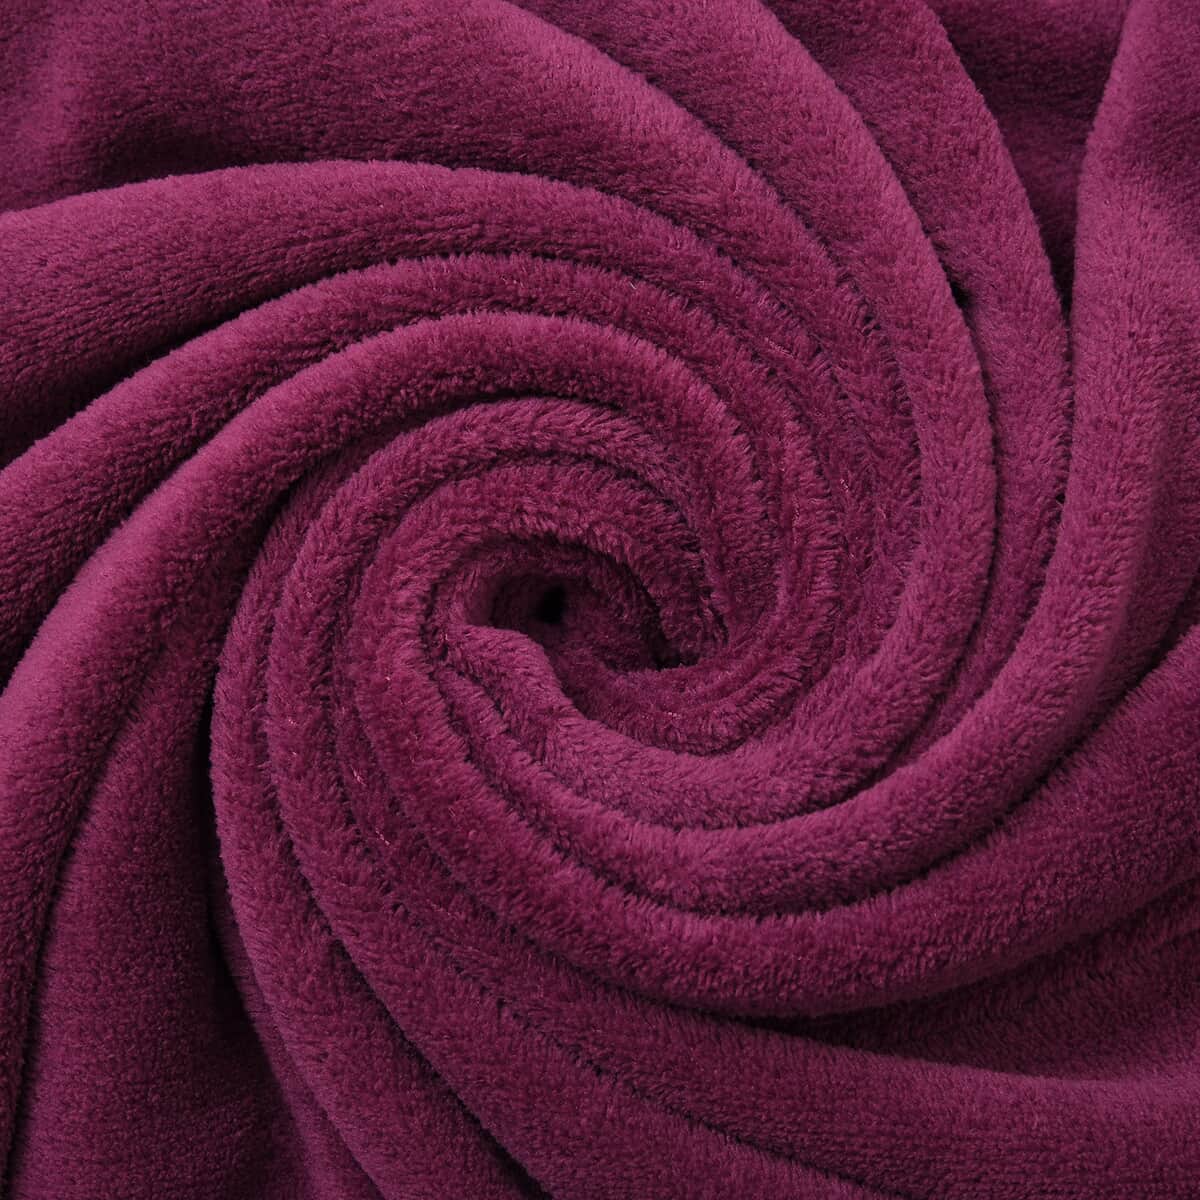 Homesmart Magenta Solid Super Soft and Warm Coral Fleece Blanket image number 3